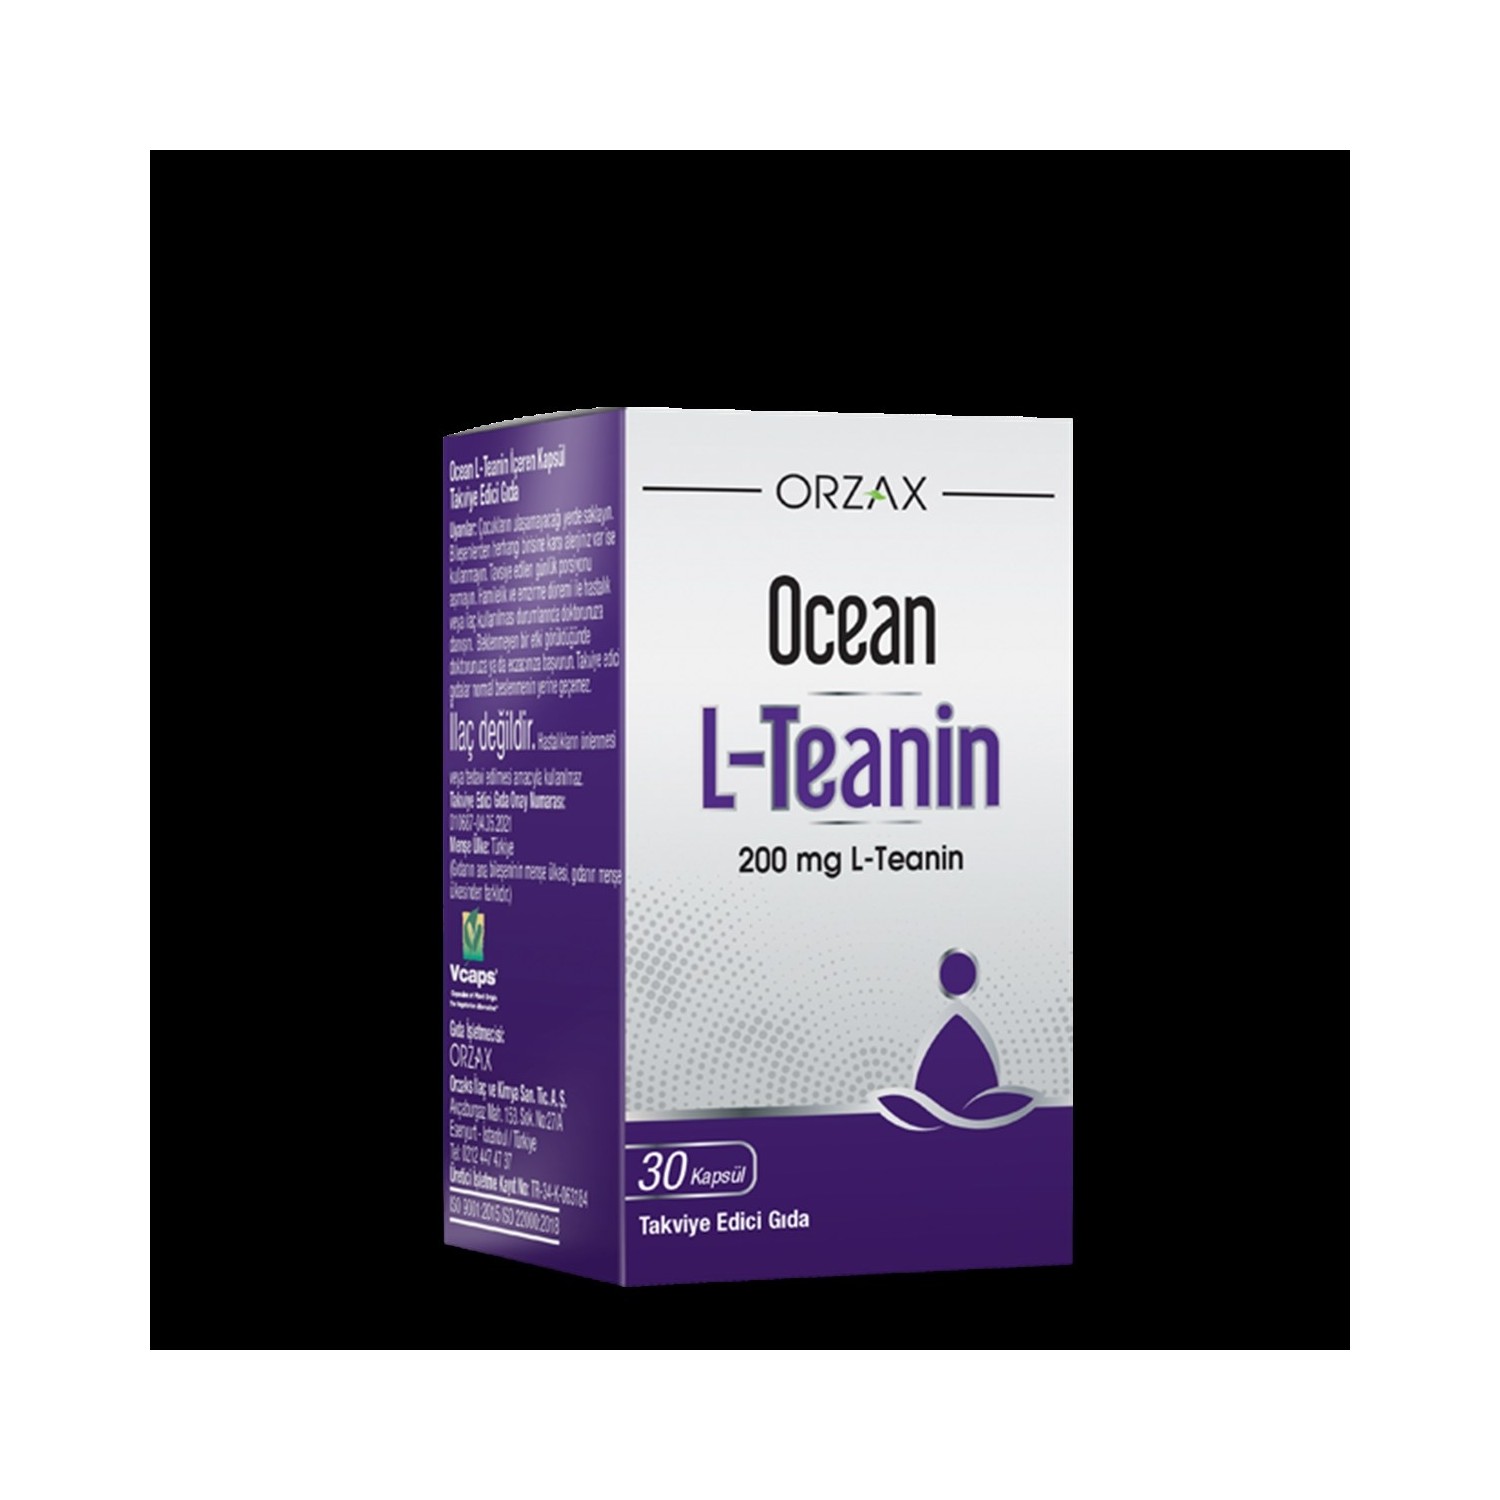 Пищевая добавка Ocean L-Theanine 200 мг, 30 капсул аминокислота л лизин l lisine 750 мг 100 капсул